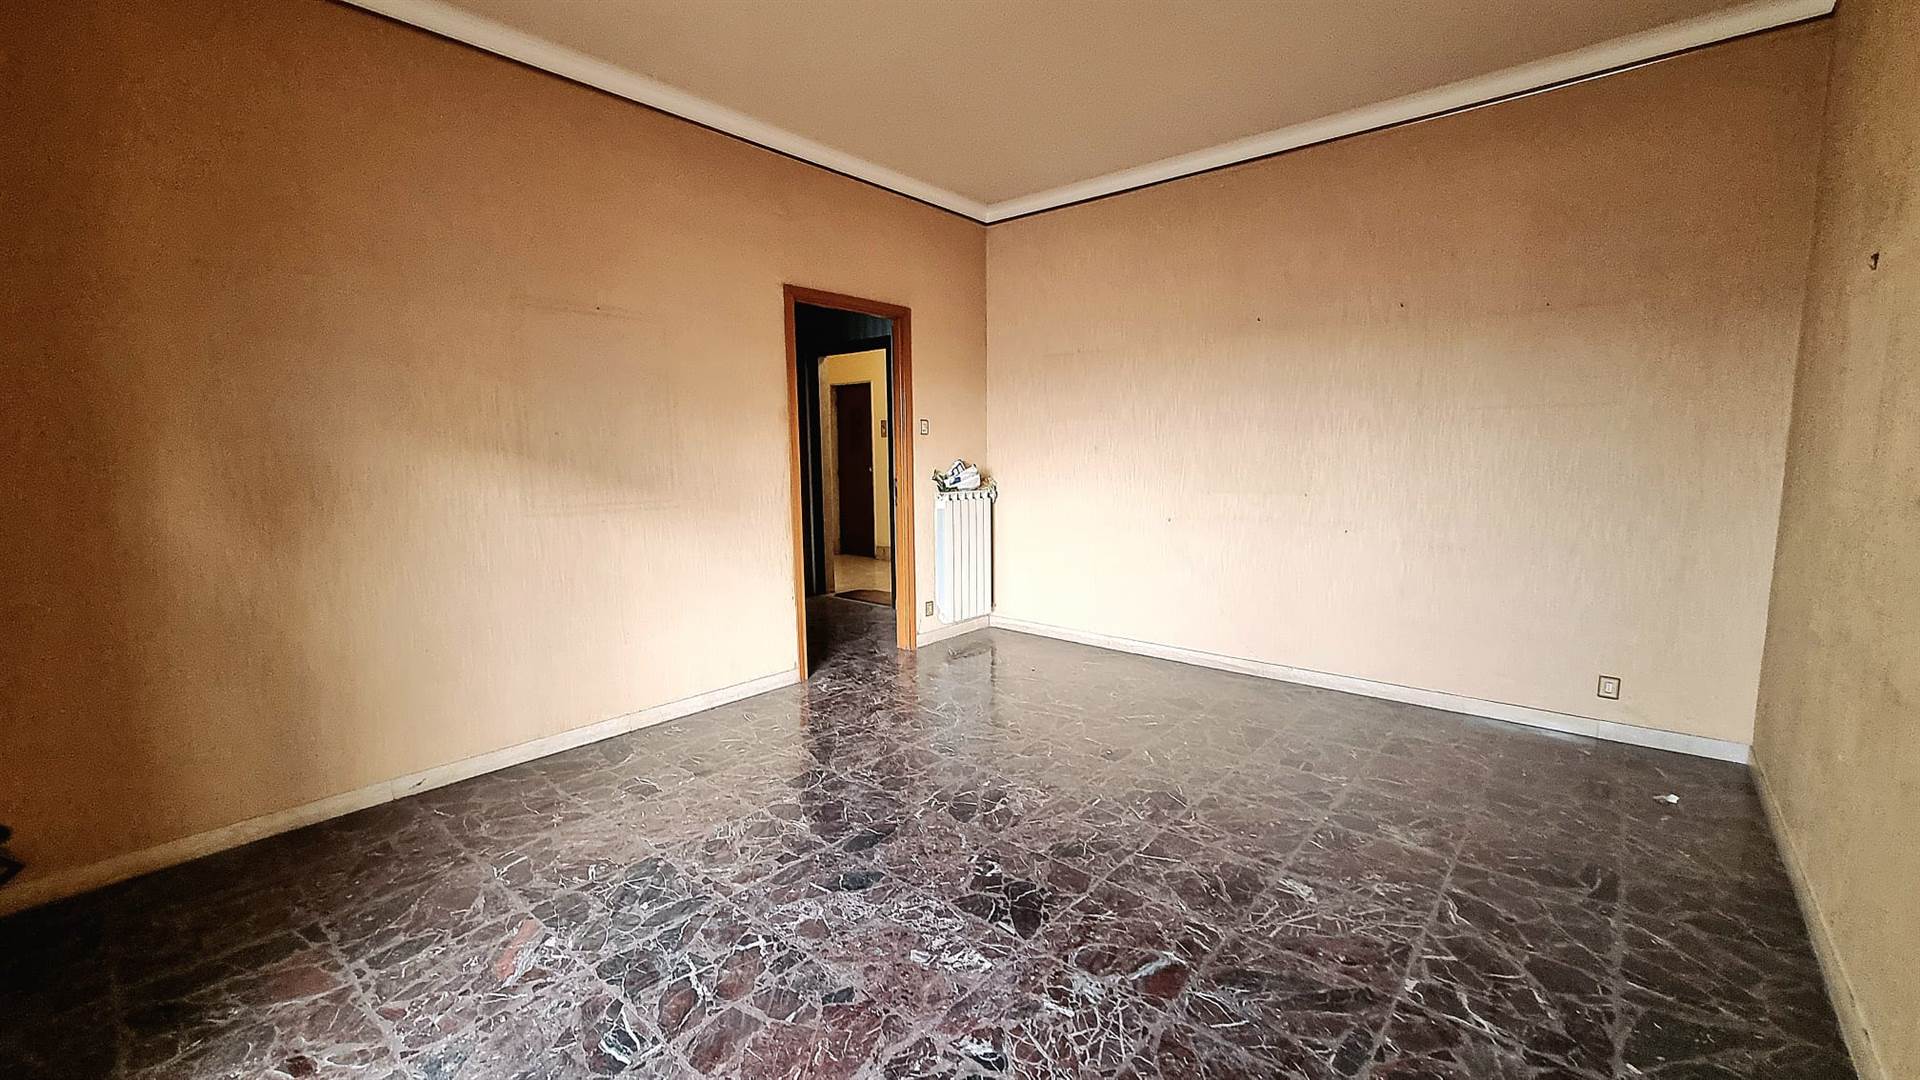 Rama Immobiliare propone in vendita, in un'ottima posizione di Catania e precisamente in via Conte di Torino, un ampio appartamento di circa 164 mq lordi e composta da quattro vani commerciali. La 